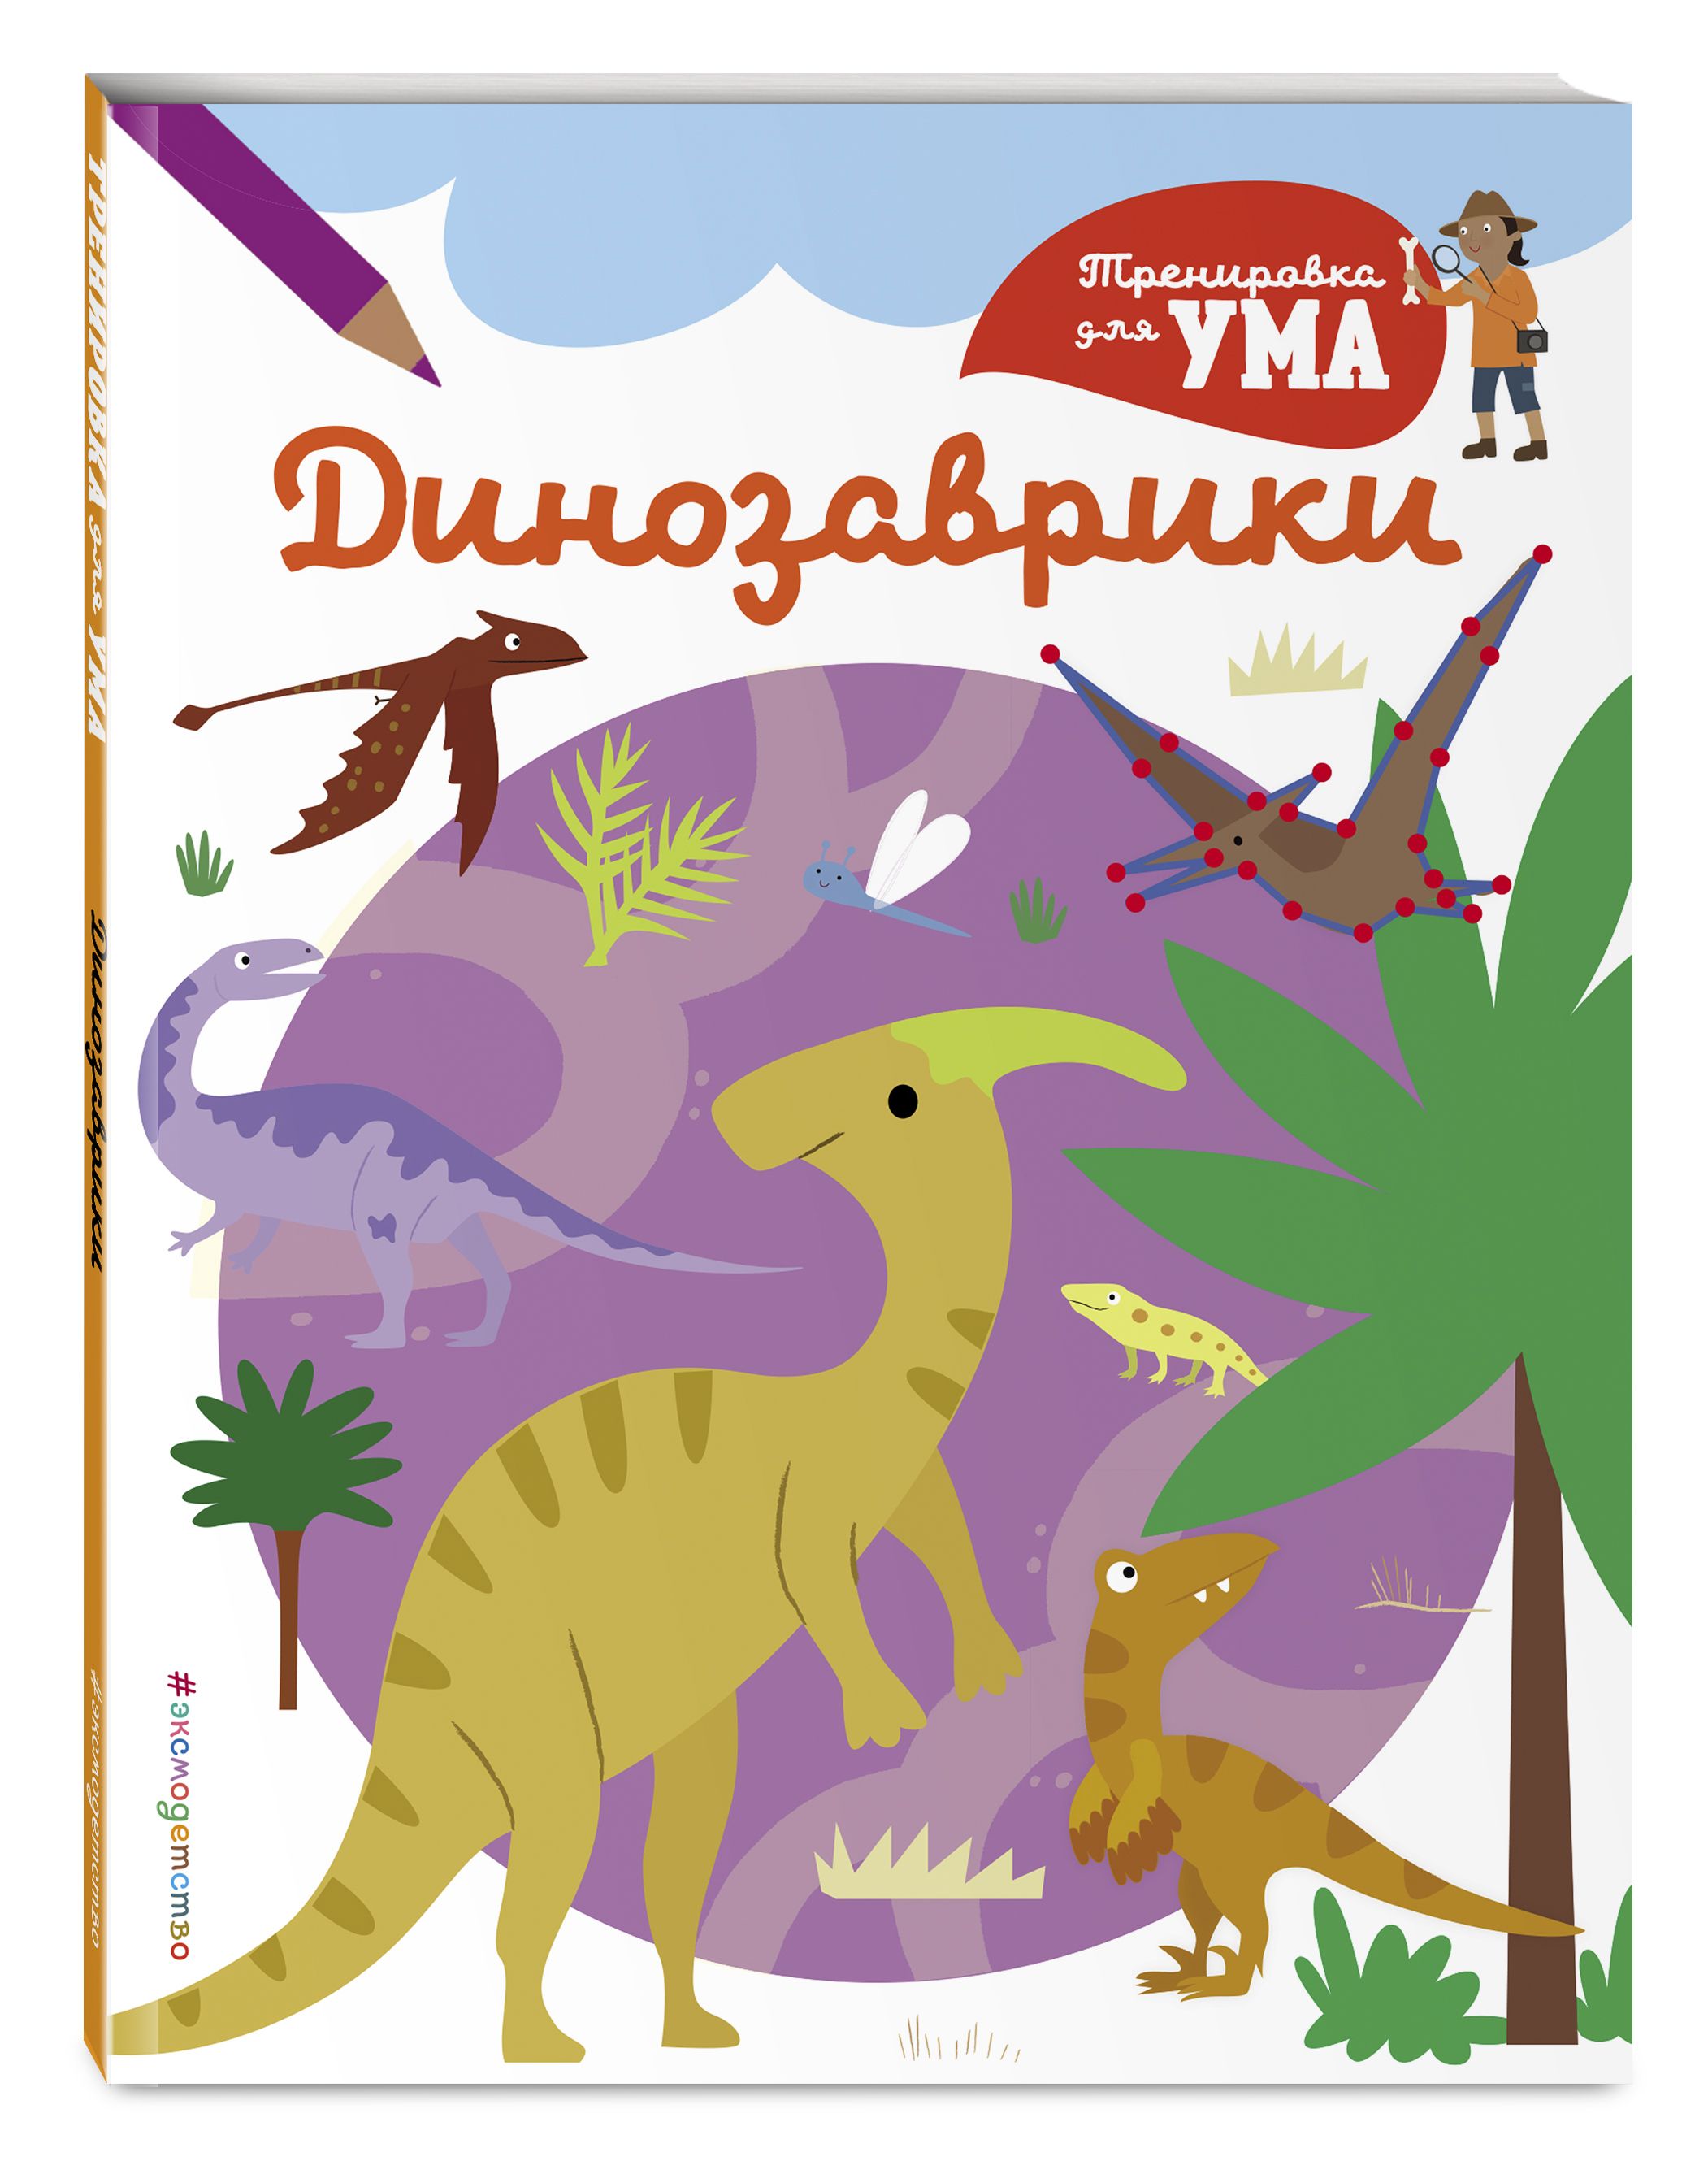 Динозавры книга купить. Книги про динозавров для детей 4-5 лет. Книжка про динозавров для детей. Путешествие ДИНОЗАВРИКОВ книжки. Книга про динозавров для детей.